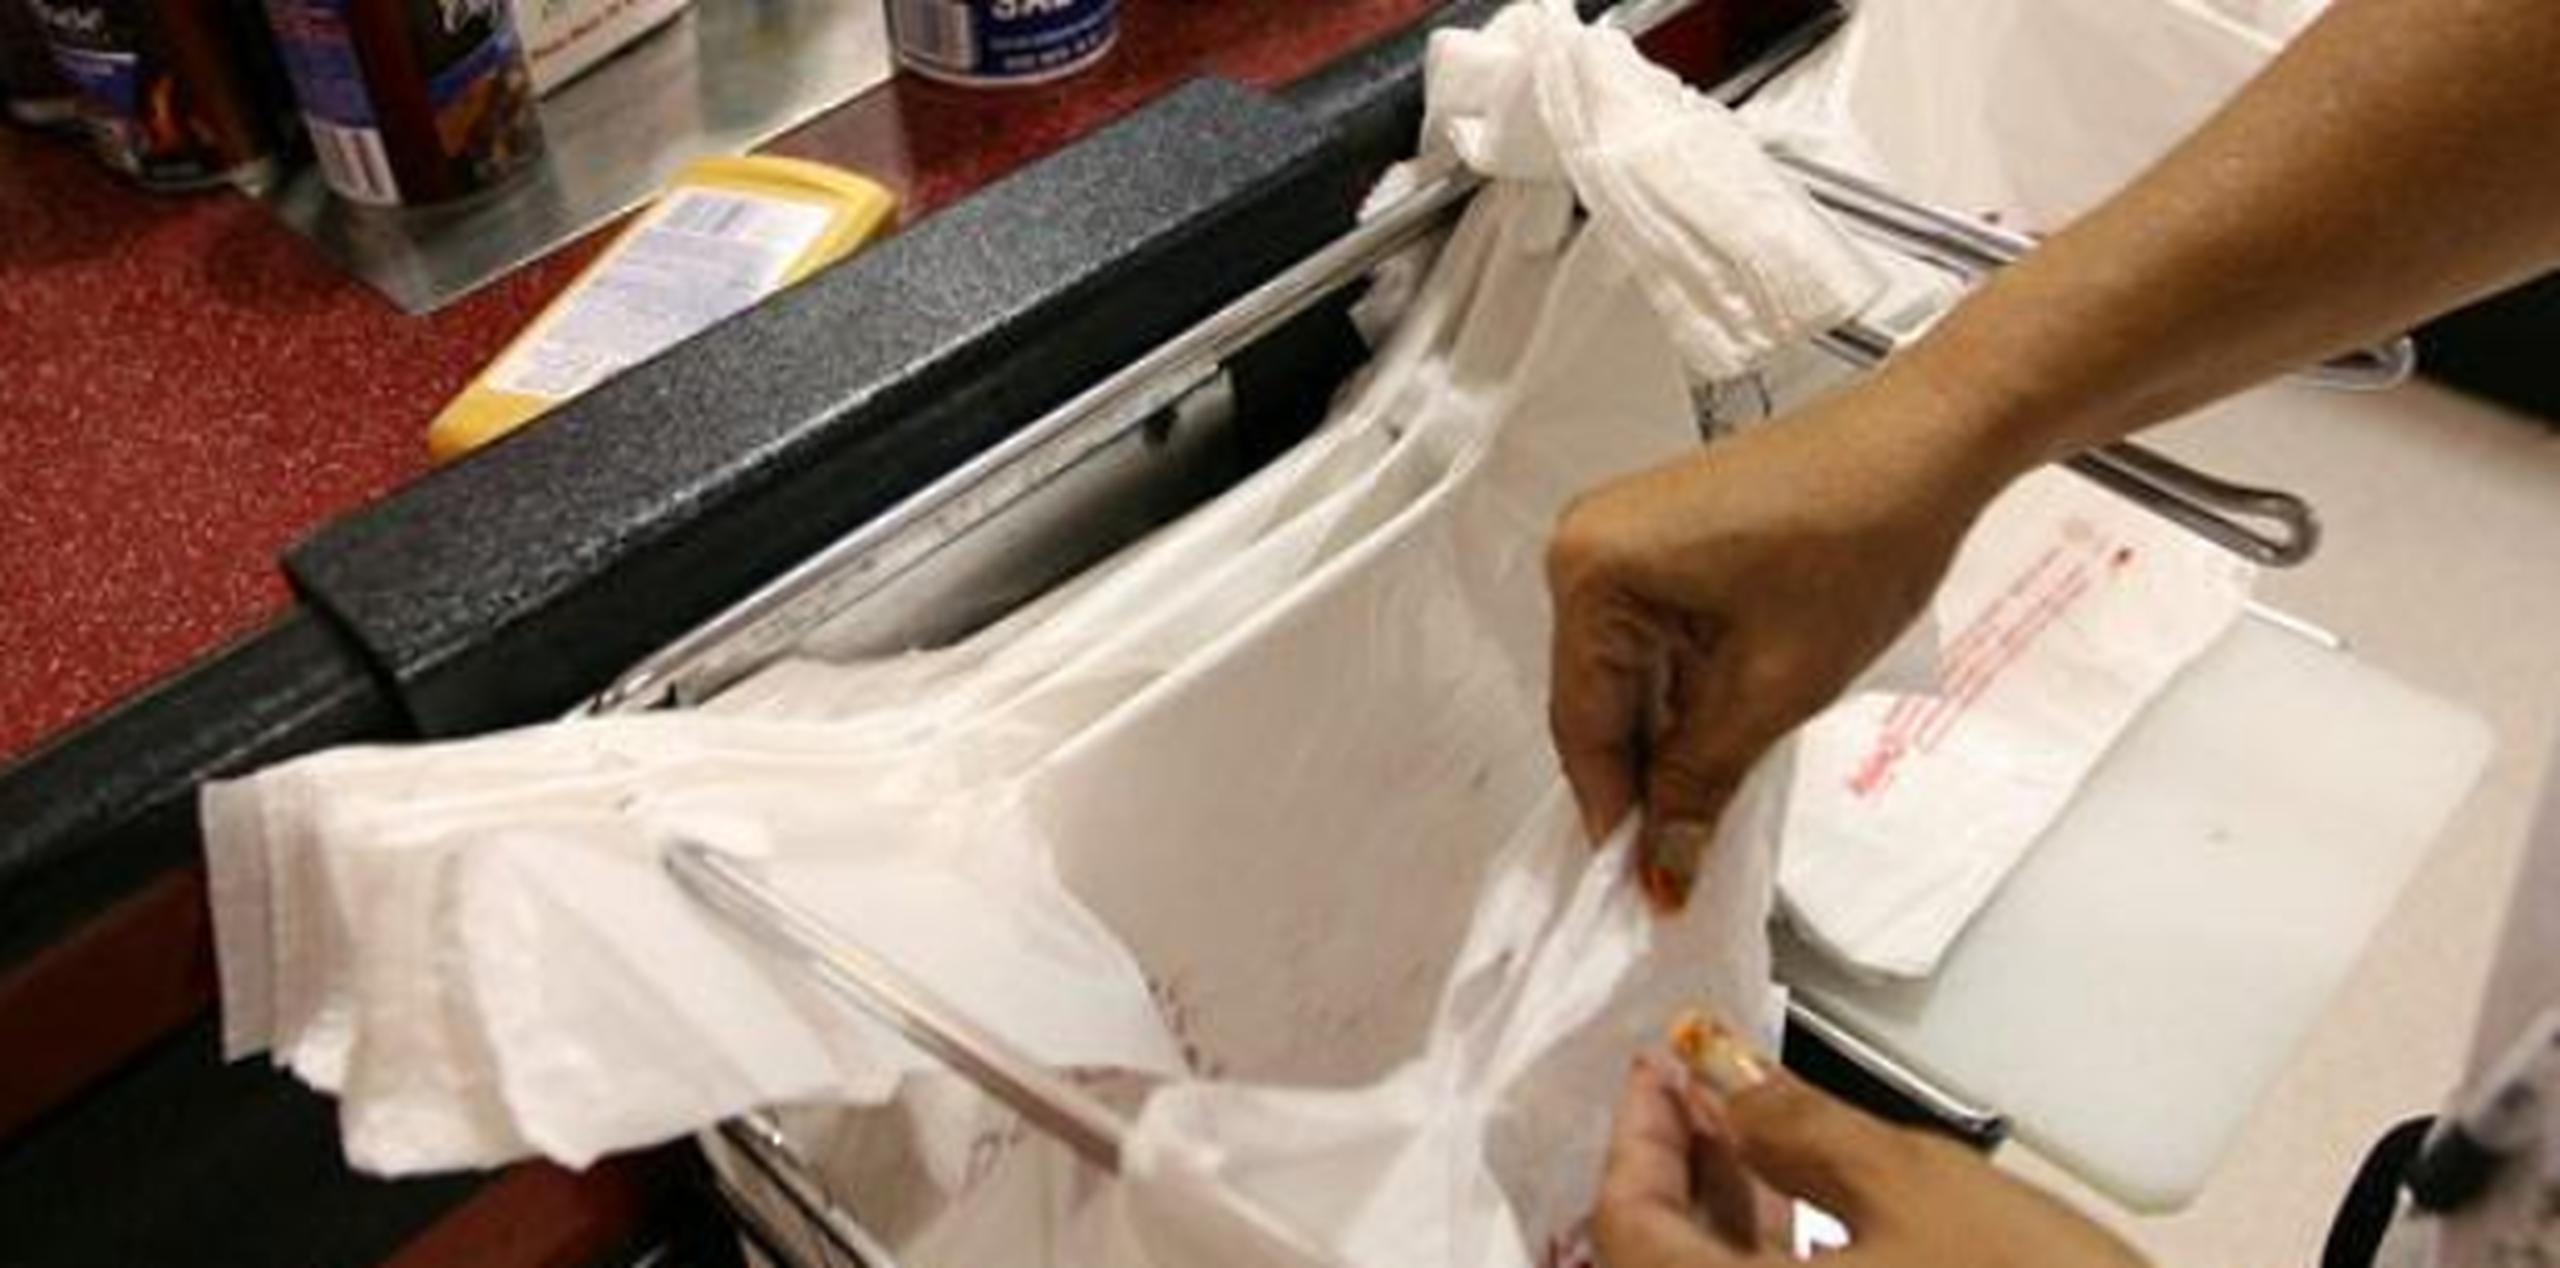 La distribución de bolsas plásticas desechables conllevará multas a los comercios de $100 por la primera infracción, $150 por la segunda y $200 por las subsiguientes. (Archivo)